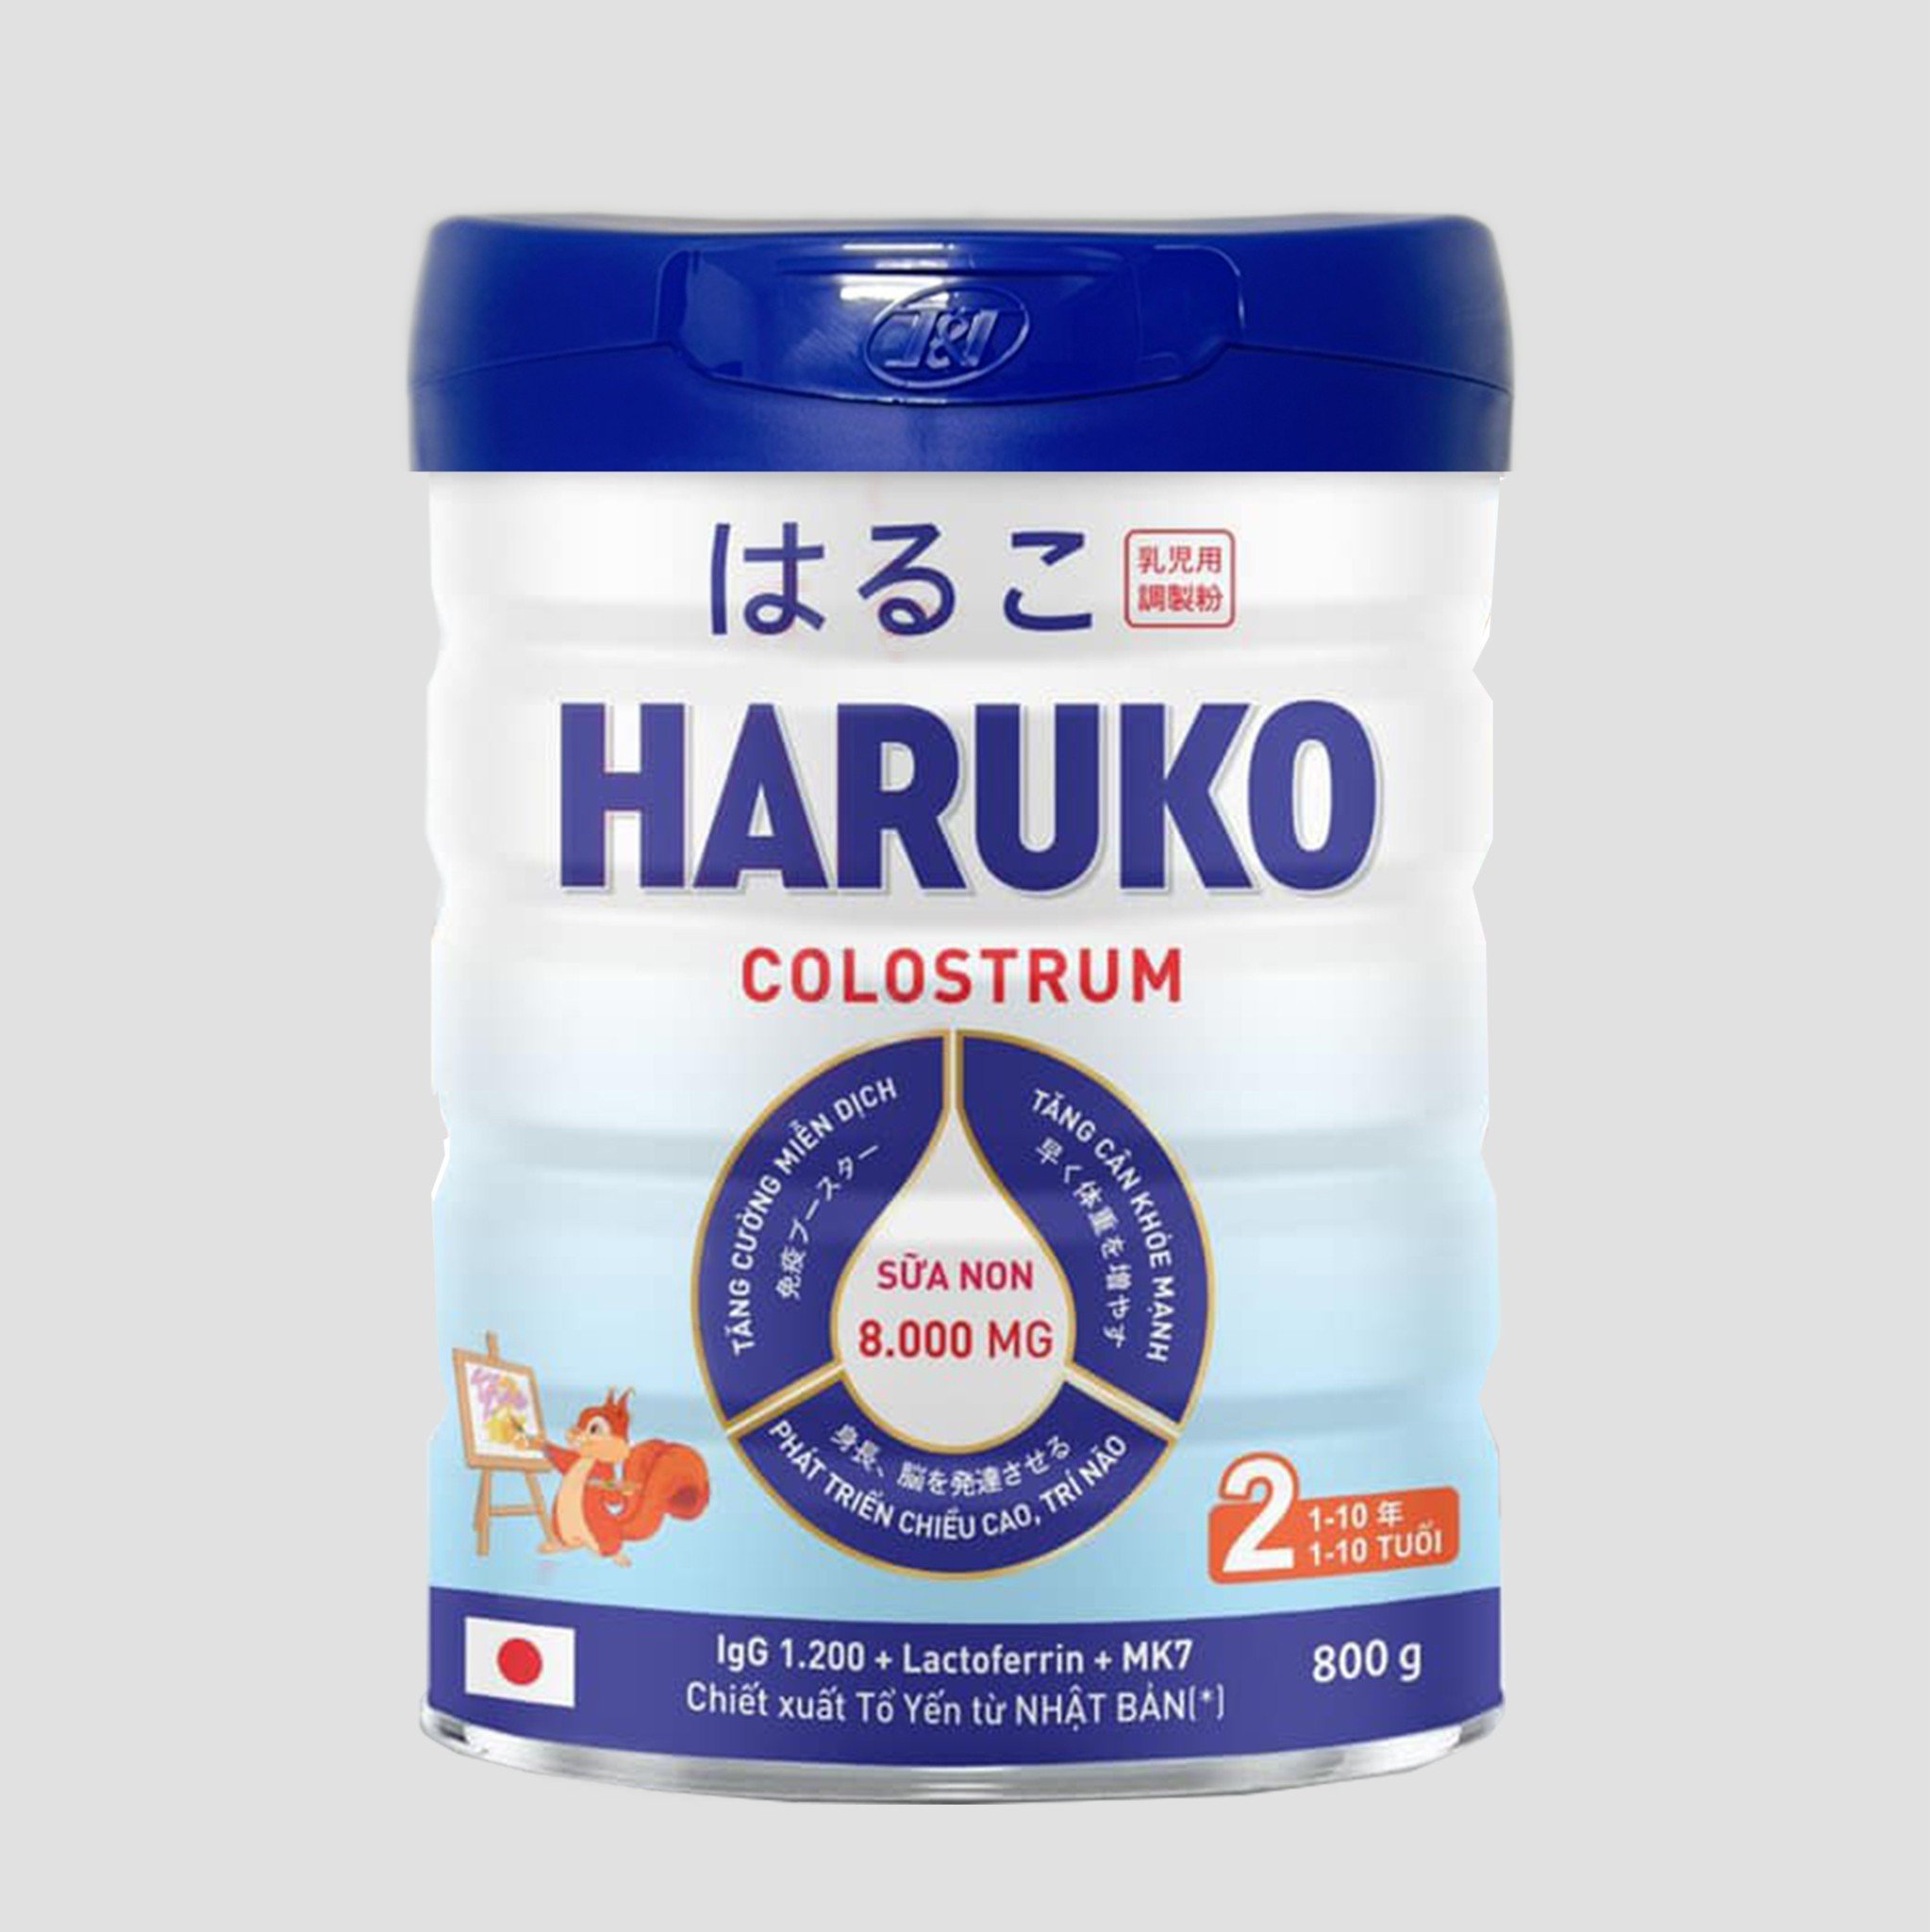 Haruko Colostrum 2